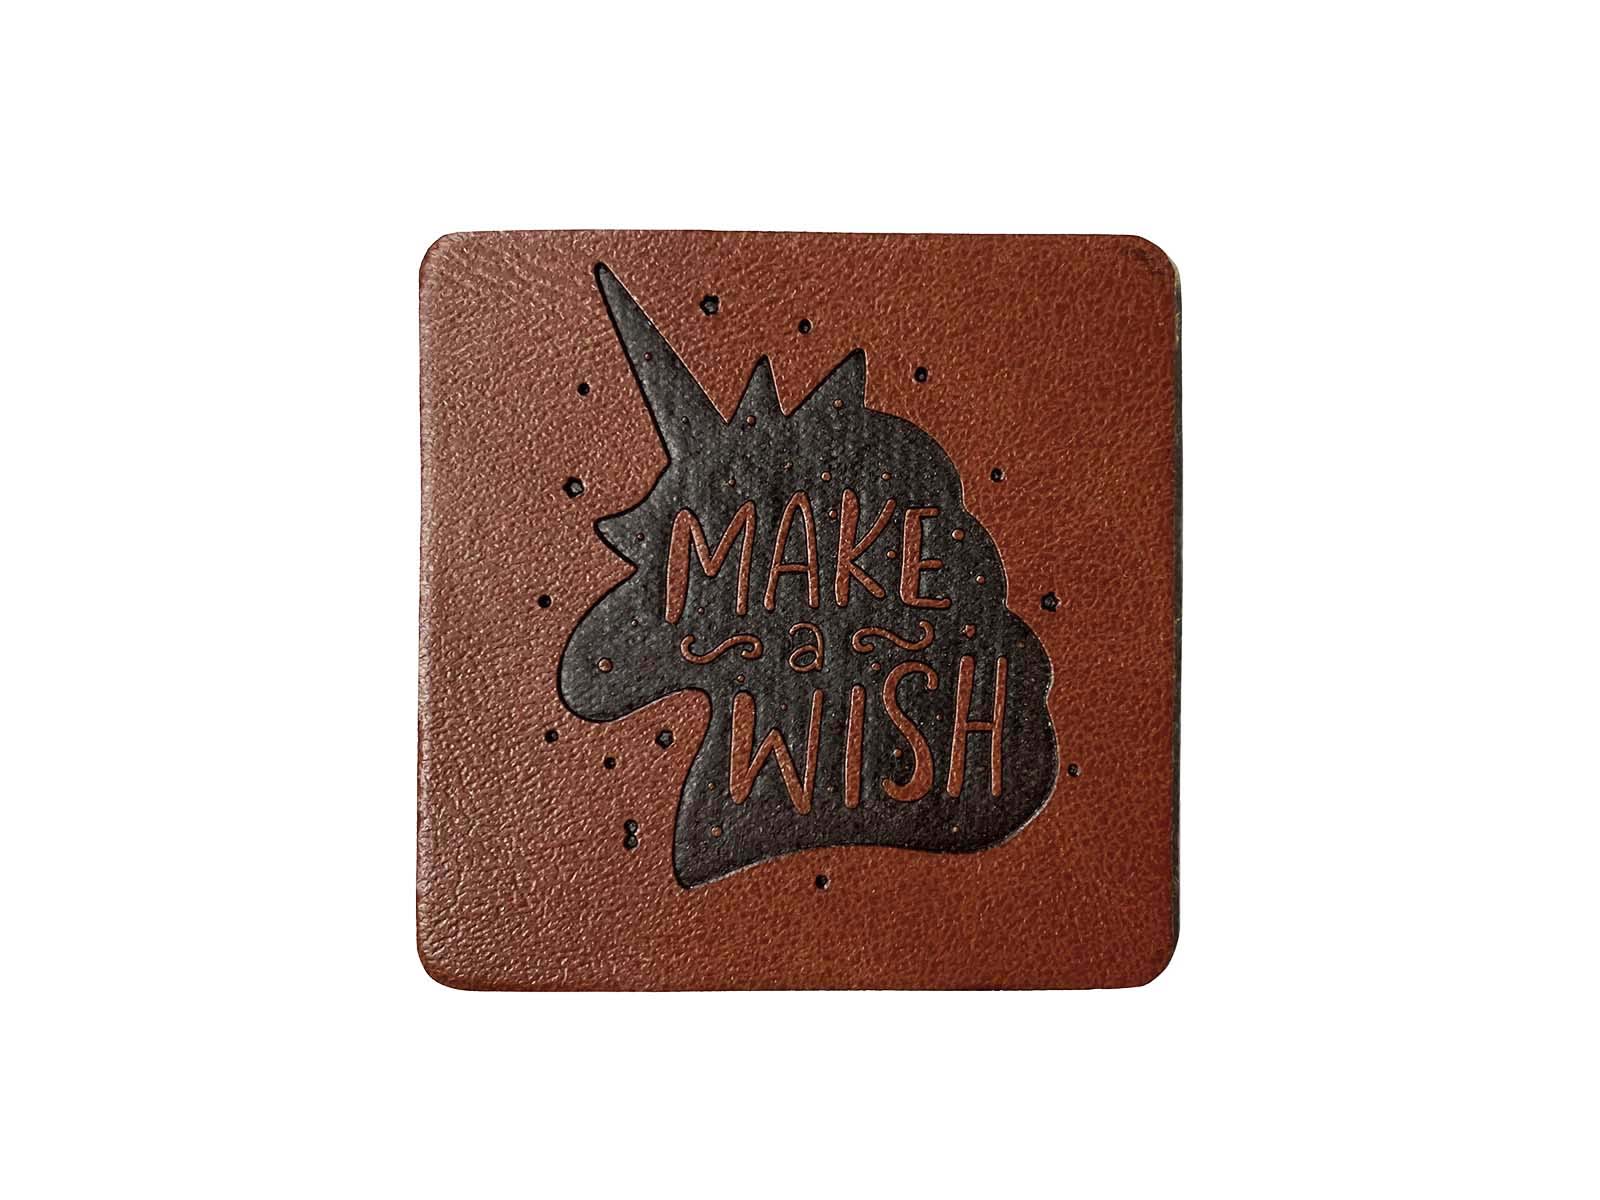 Label aus Kunstleder - "Make a wish" in dunkelbraun